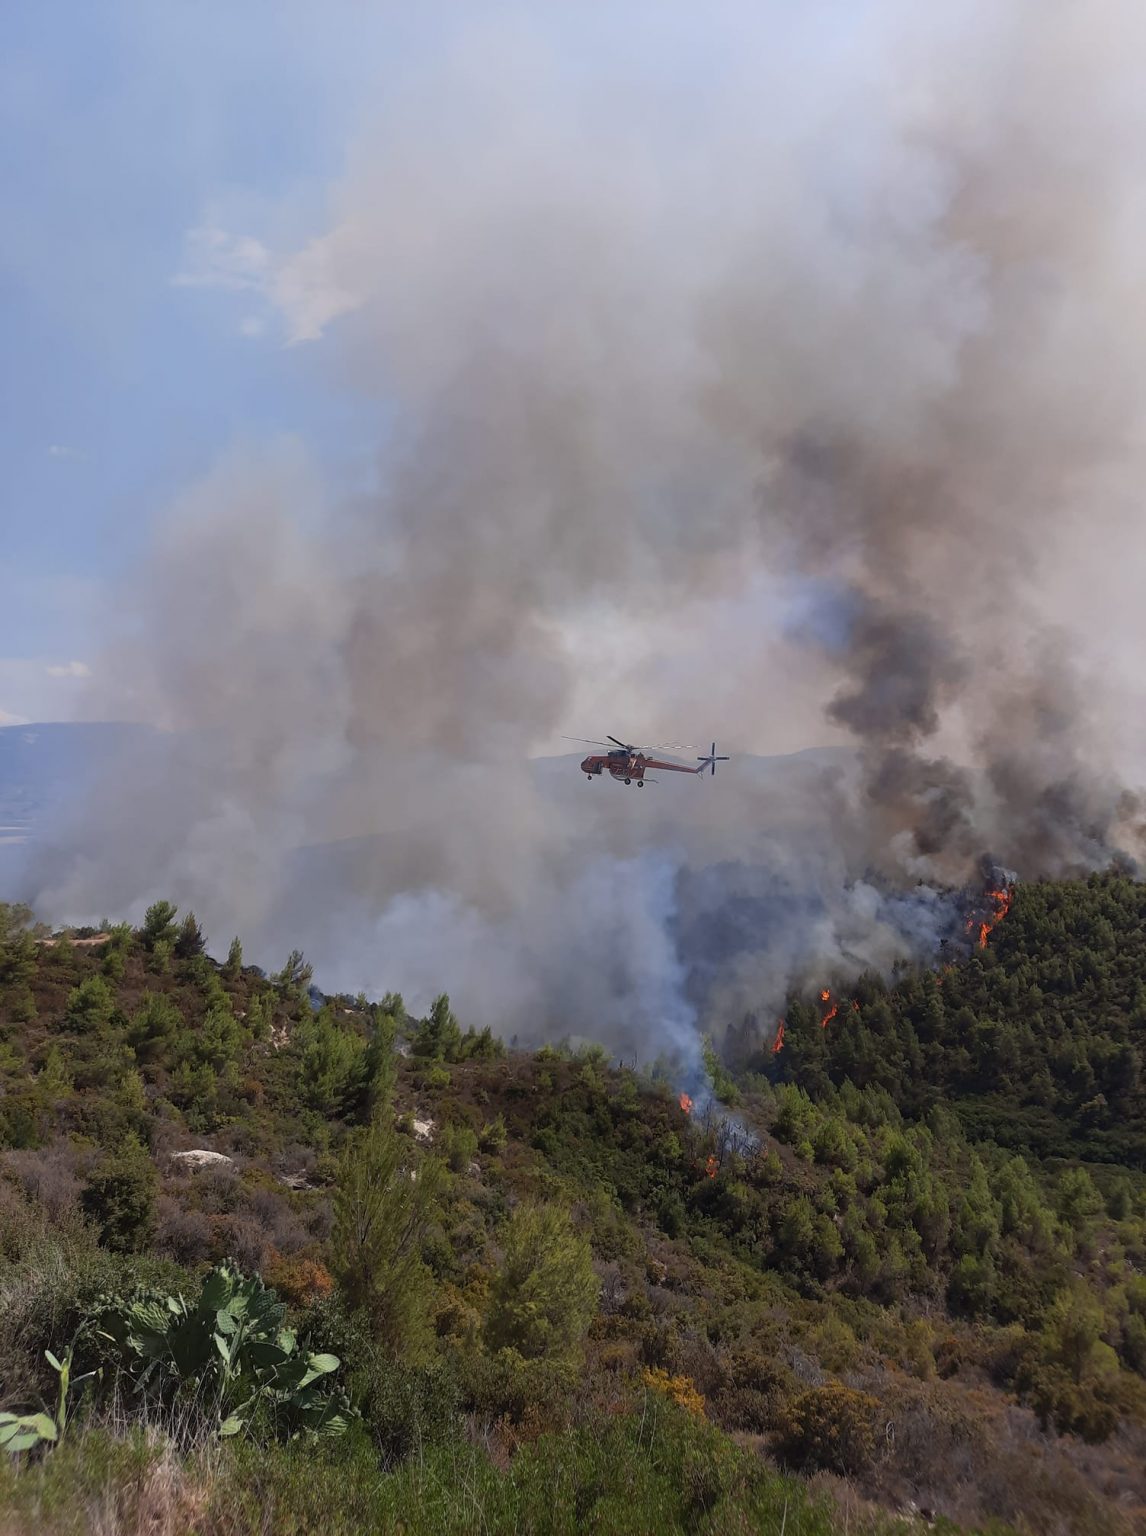 Σε εξέλιξη οι πυρκαγιές σε Αλμυρή Κορινθίας και δήμο Επιδαύρου -Επιχειρούν ισχυρές πυροσβεστικές δυνάμεις